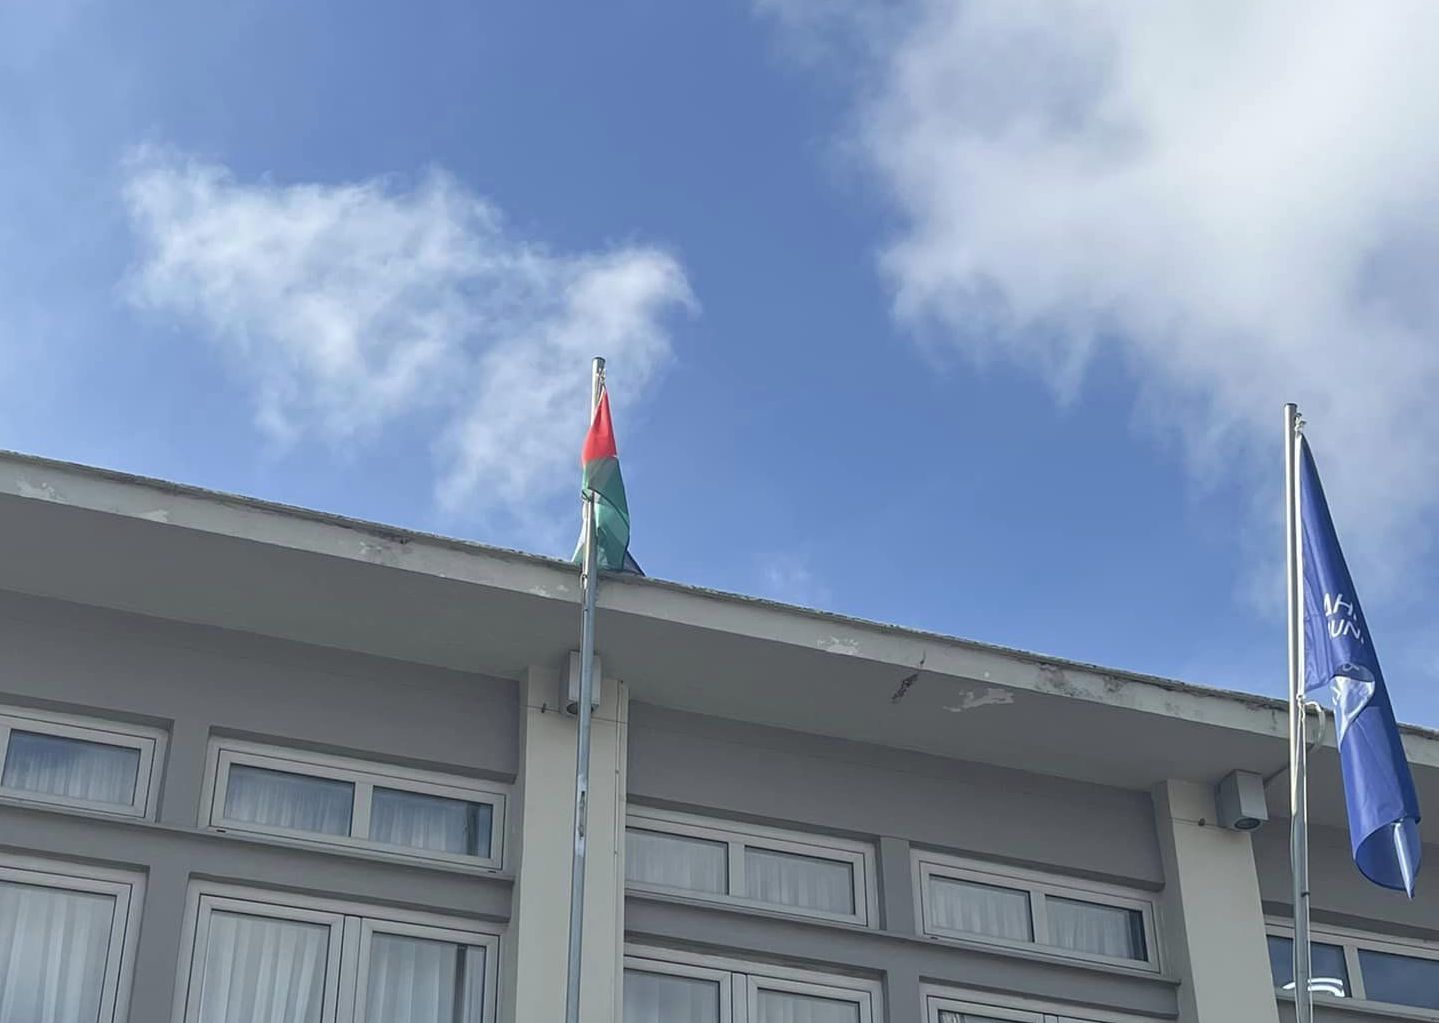 Πρωτότυπο: Πάσχα στο Αργοστόλι με τη σημαία της Παλαιστίνης κρεμασμένη στο δημαρχείο [εικόνες]